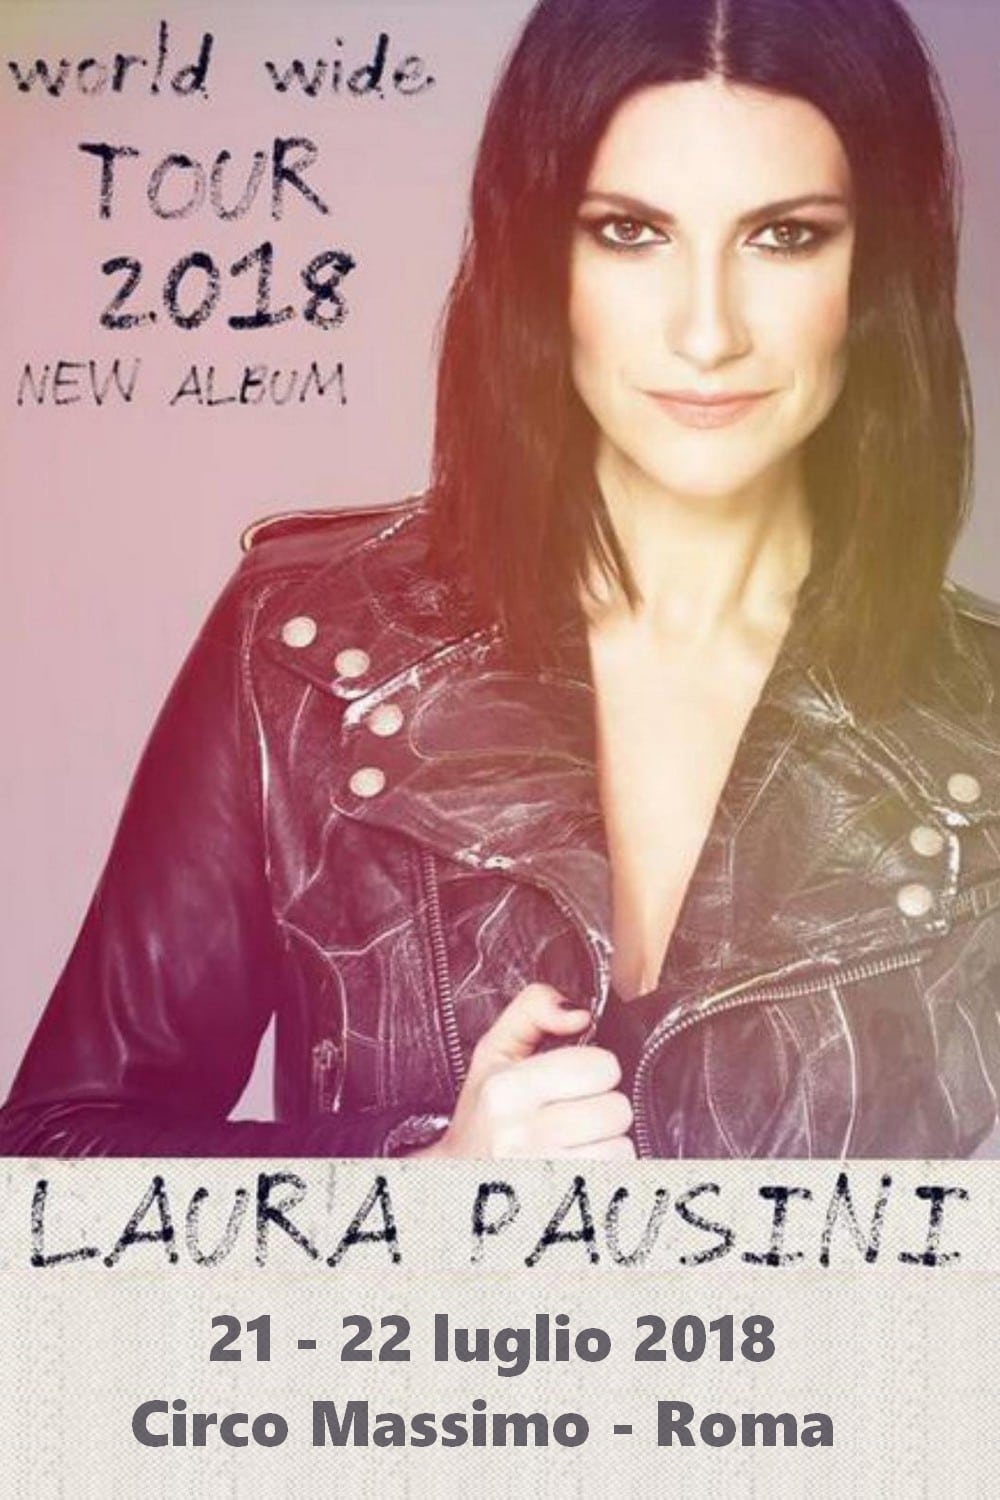 Laura Pausini - Fatti Sentire World Tour 2018